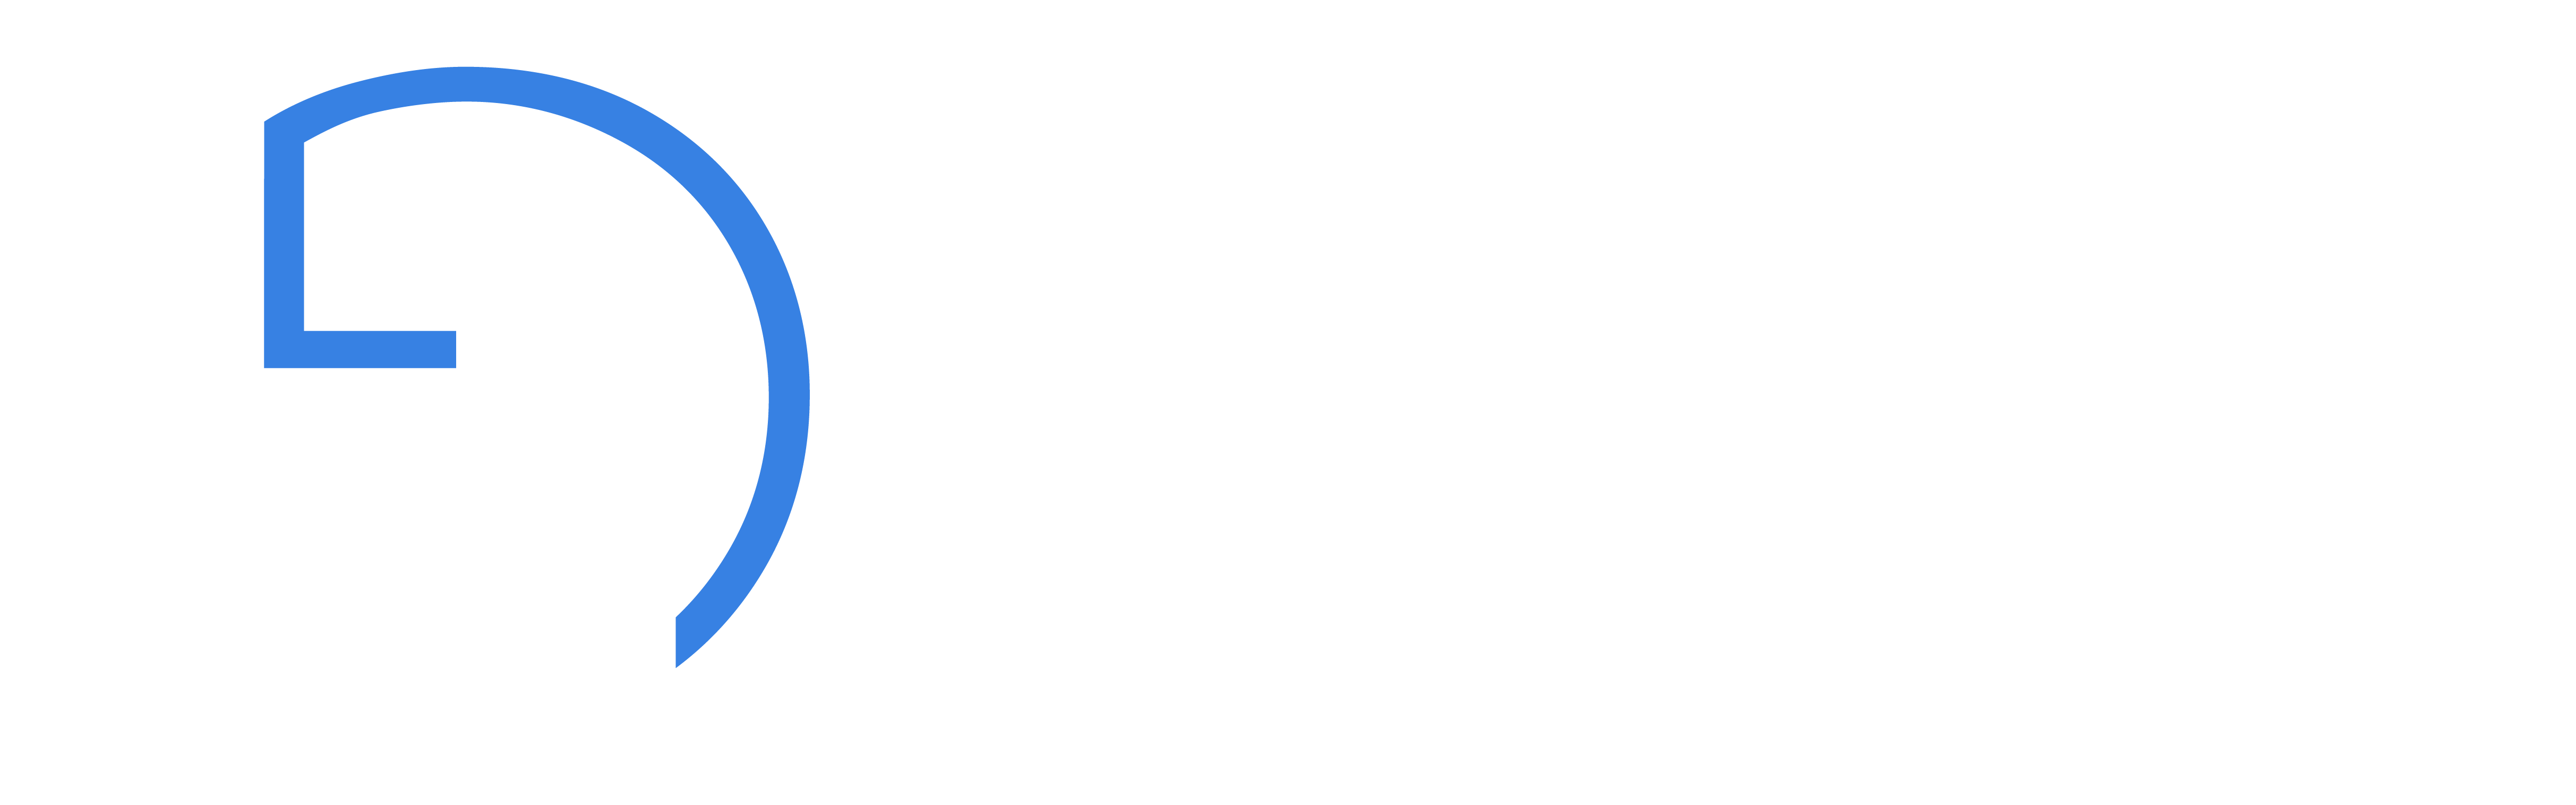 Dr. Gerhard Gamper